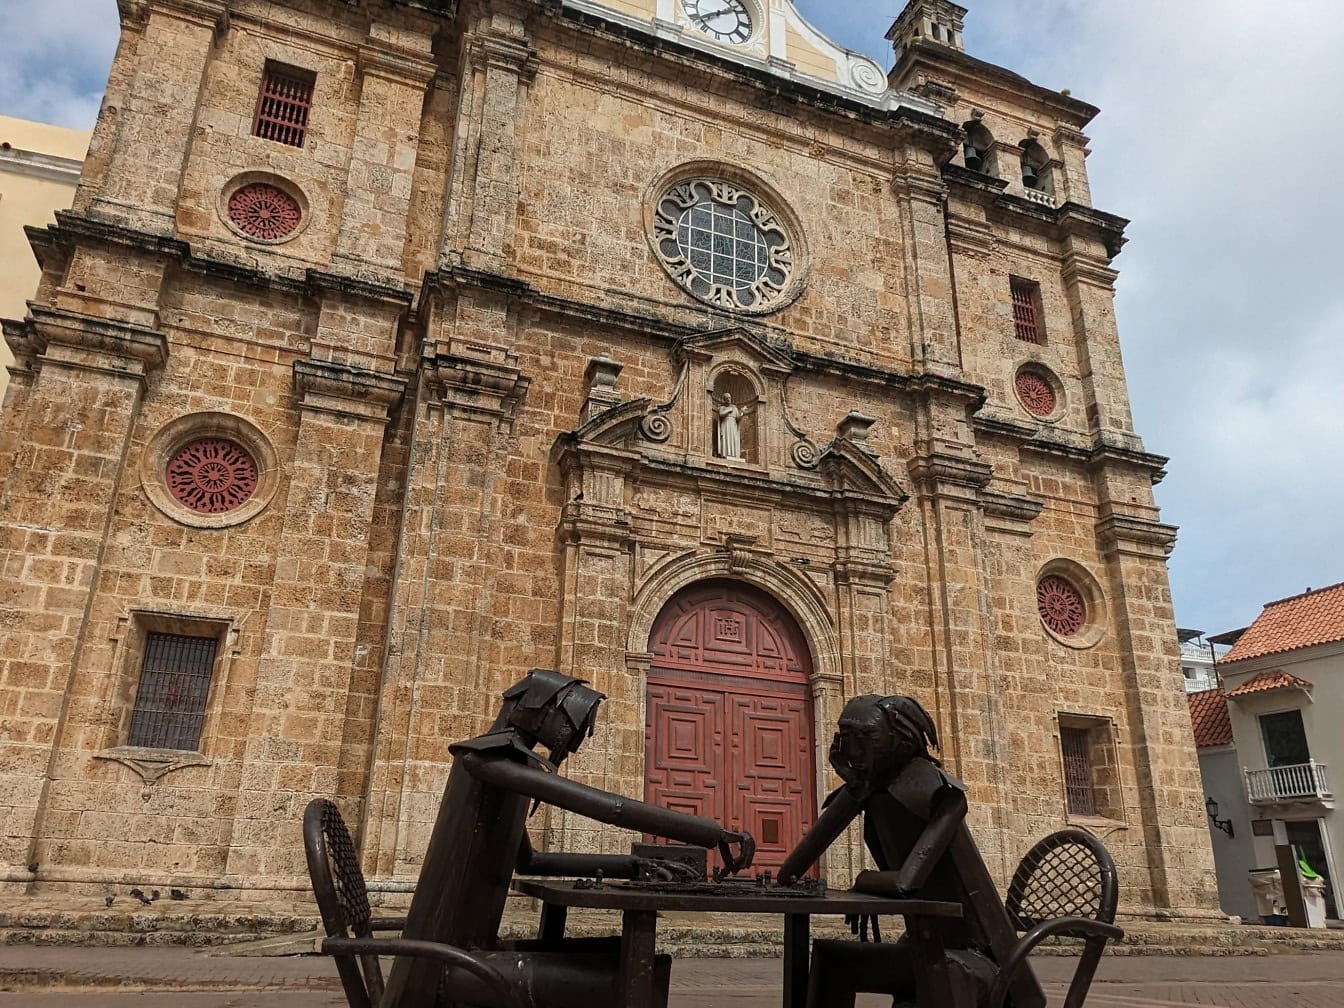 Socha dvoch ľudí sediacich pri stole a hrajúcich šach pred kostolom San Pedro Claver v Cartagene, Kolumbia